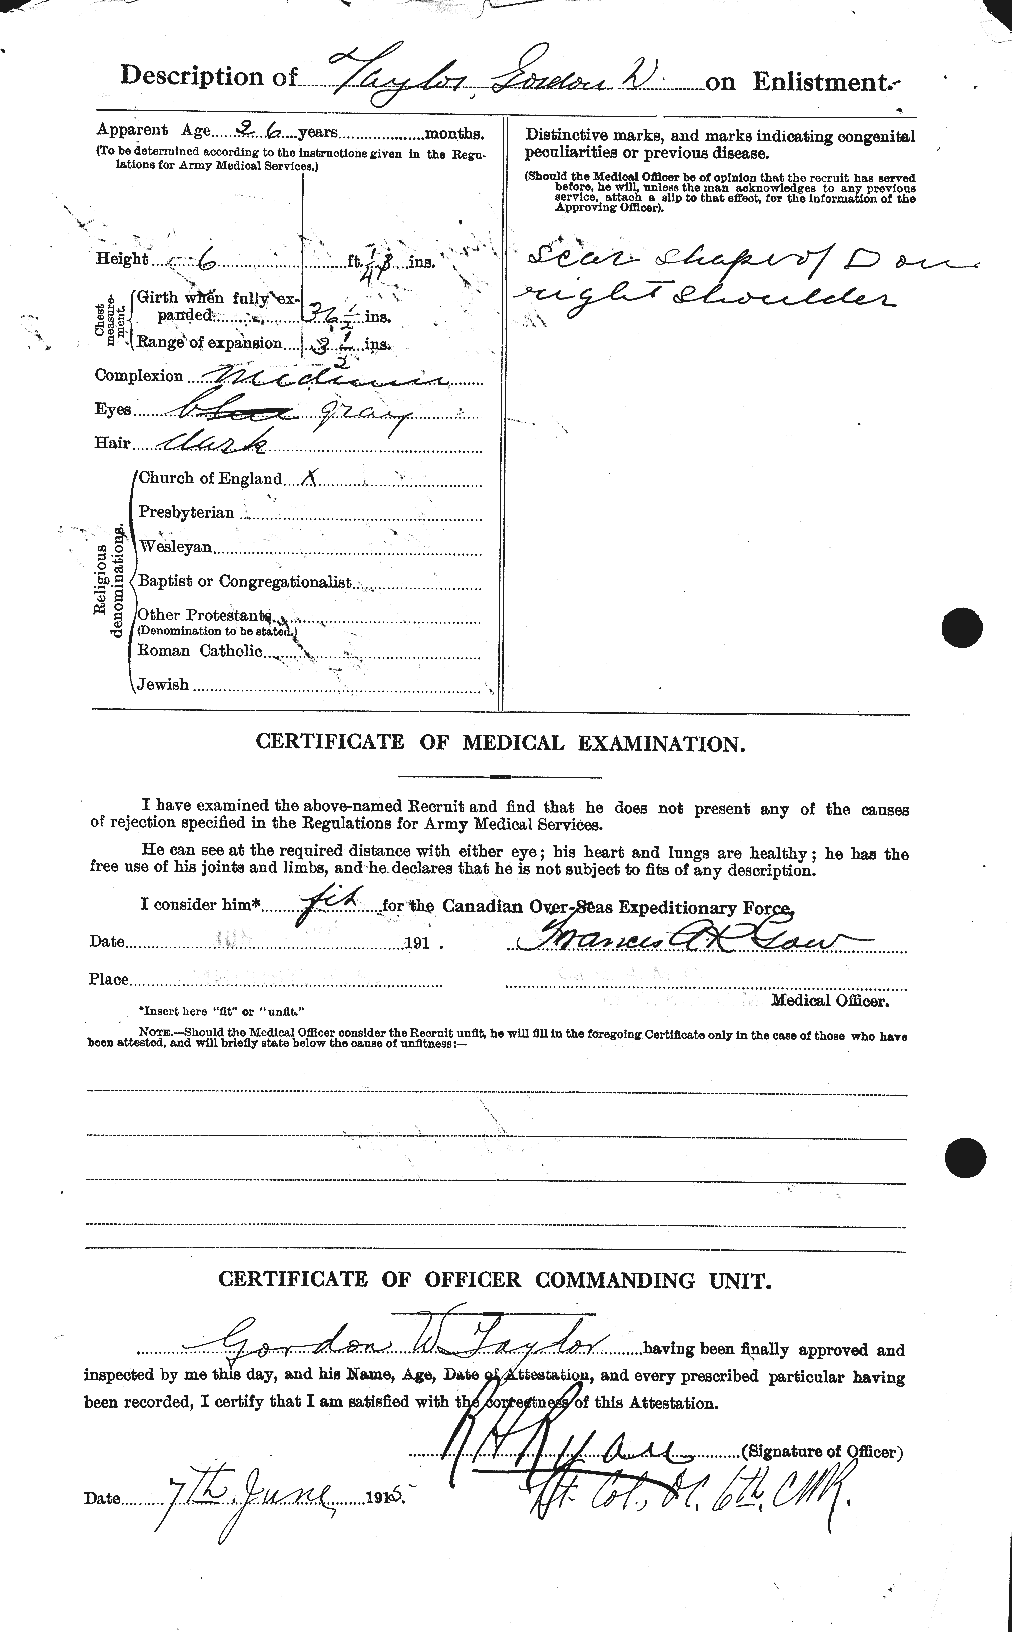 Dossiers du Personnel de la Première Guerre mondiale - CEC 626392b